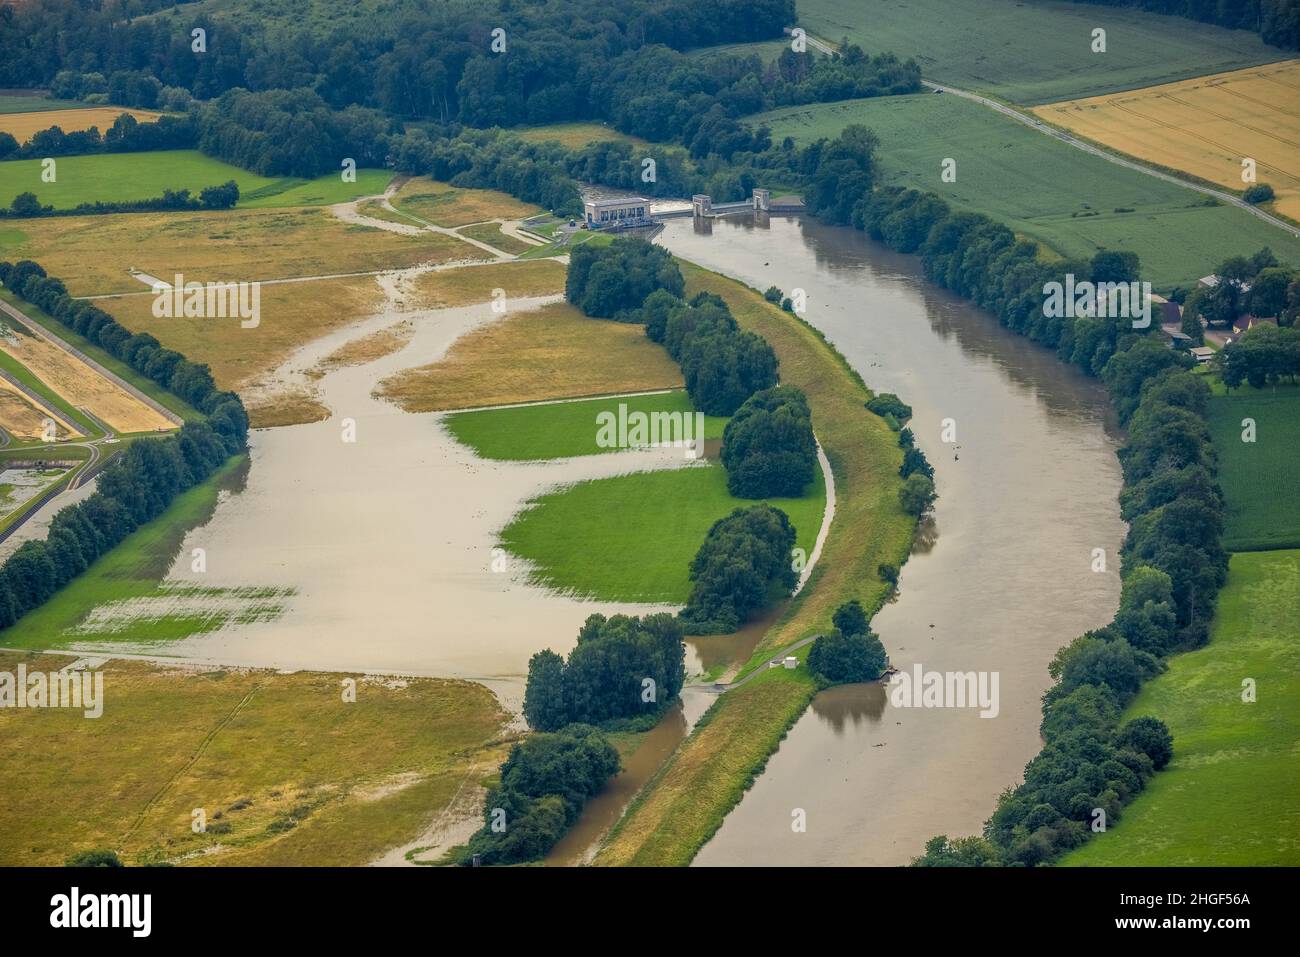 Foto aerea, alluvione della Ruhr, sbarramento di Ense Wickede, alluvione dopo forti piogge, Waltringen, Ense, Sauerland, Renania settentrionale-Vestfalia, Germania, DE, Europa, Foto Stock